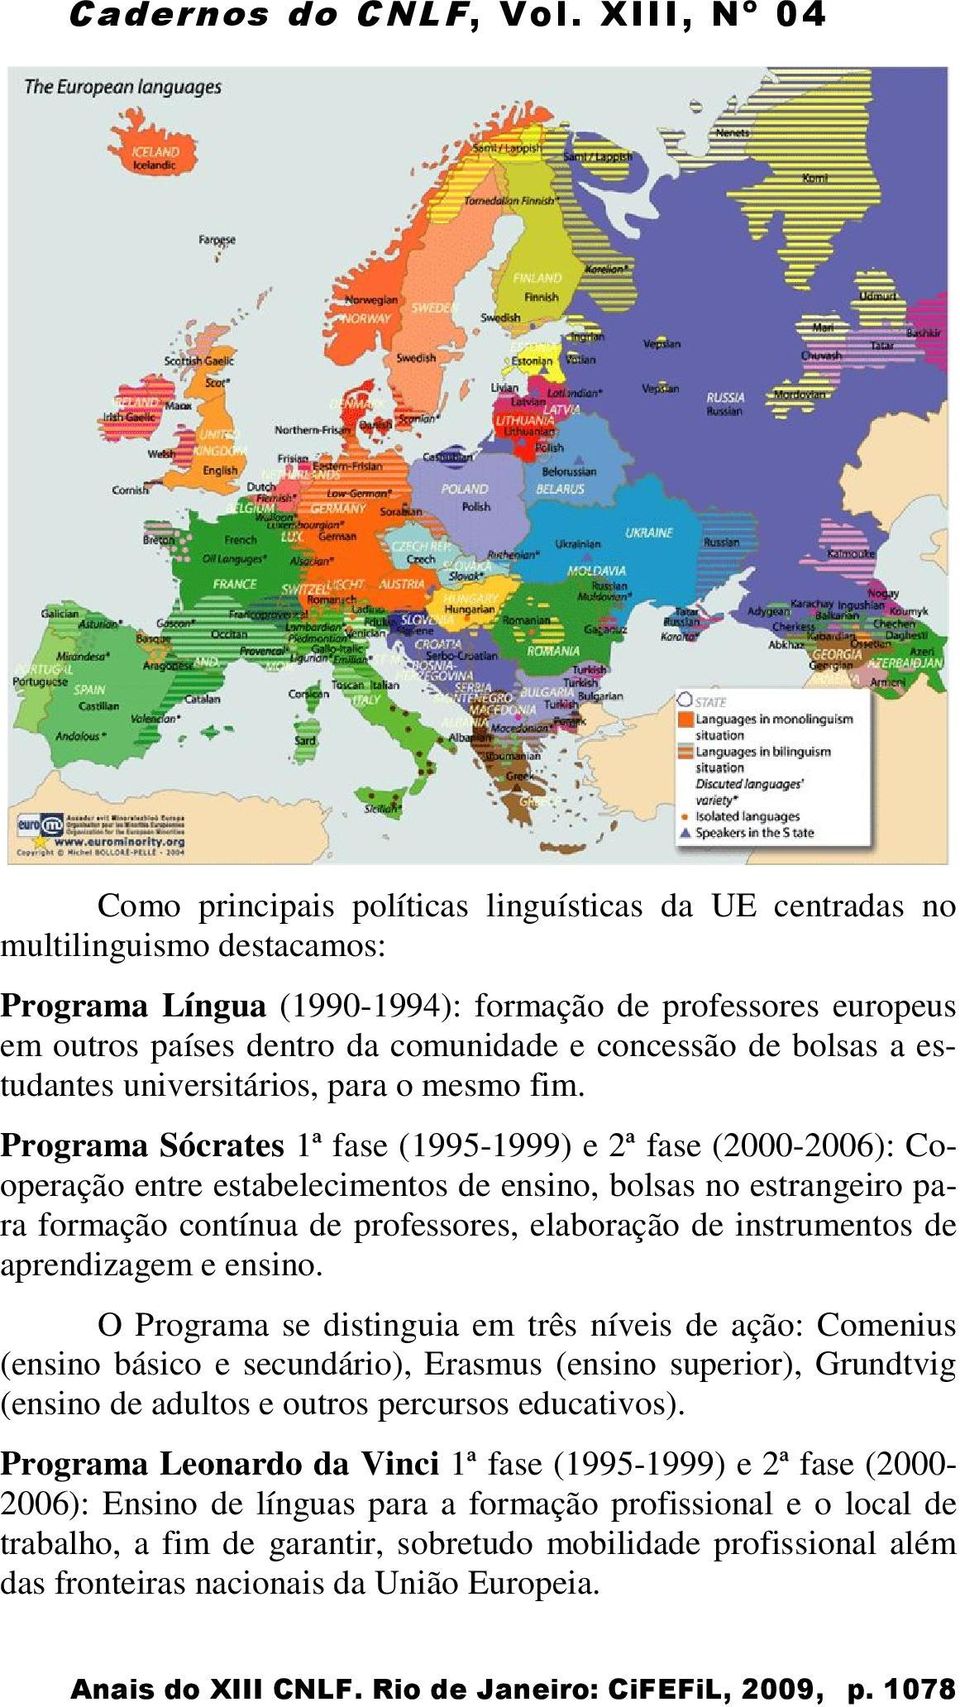 Programa Sócrates 1ª fase (1995-1999) e 2ª fase (2000-2006): Cooperação entre estabelecimentos de ensino, bolsas no estrangeiro para formação contínua de professores, elaboração de instrumentos de